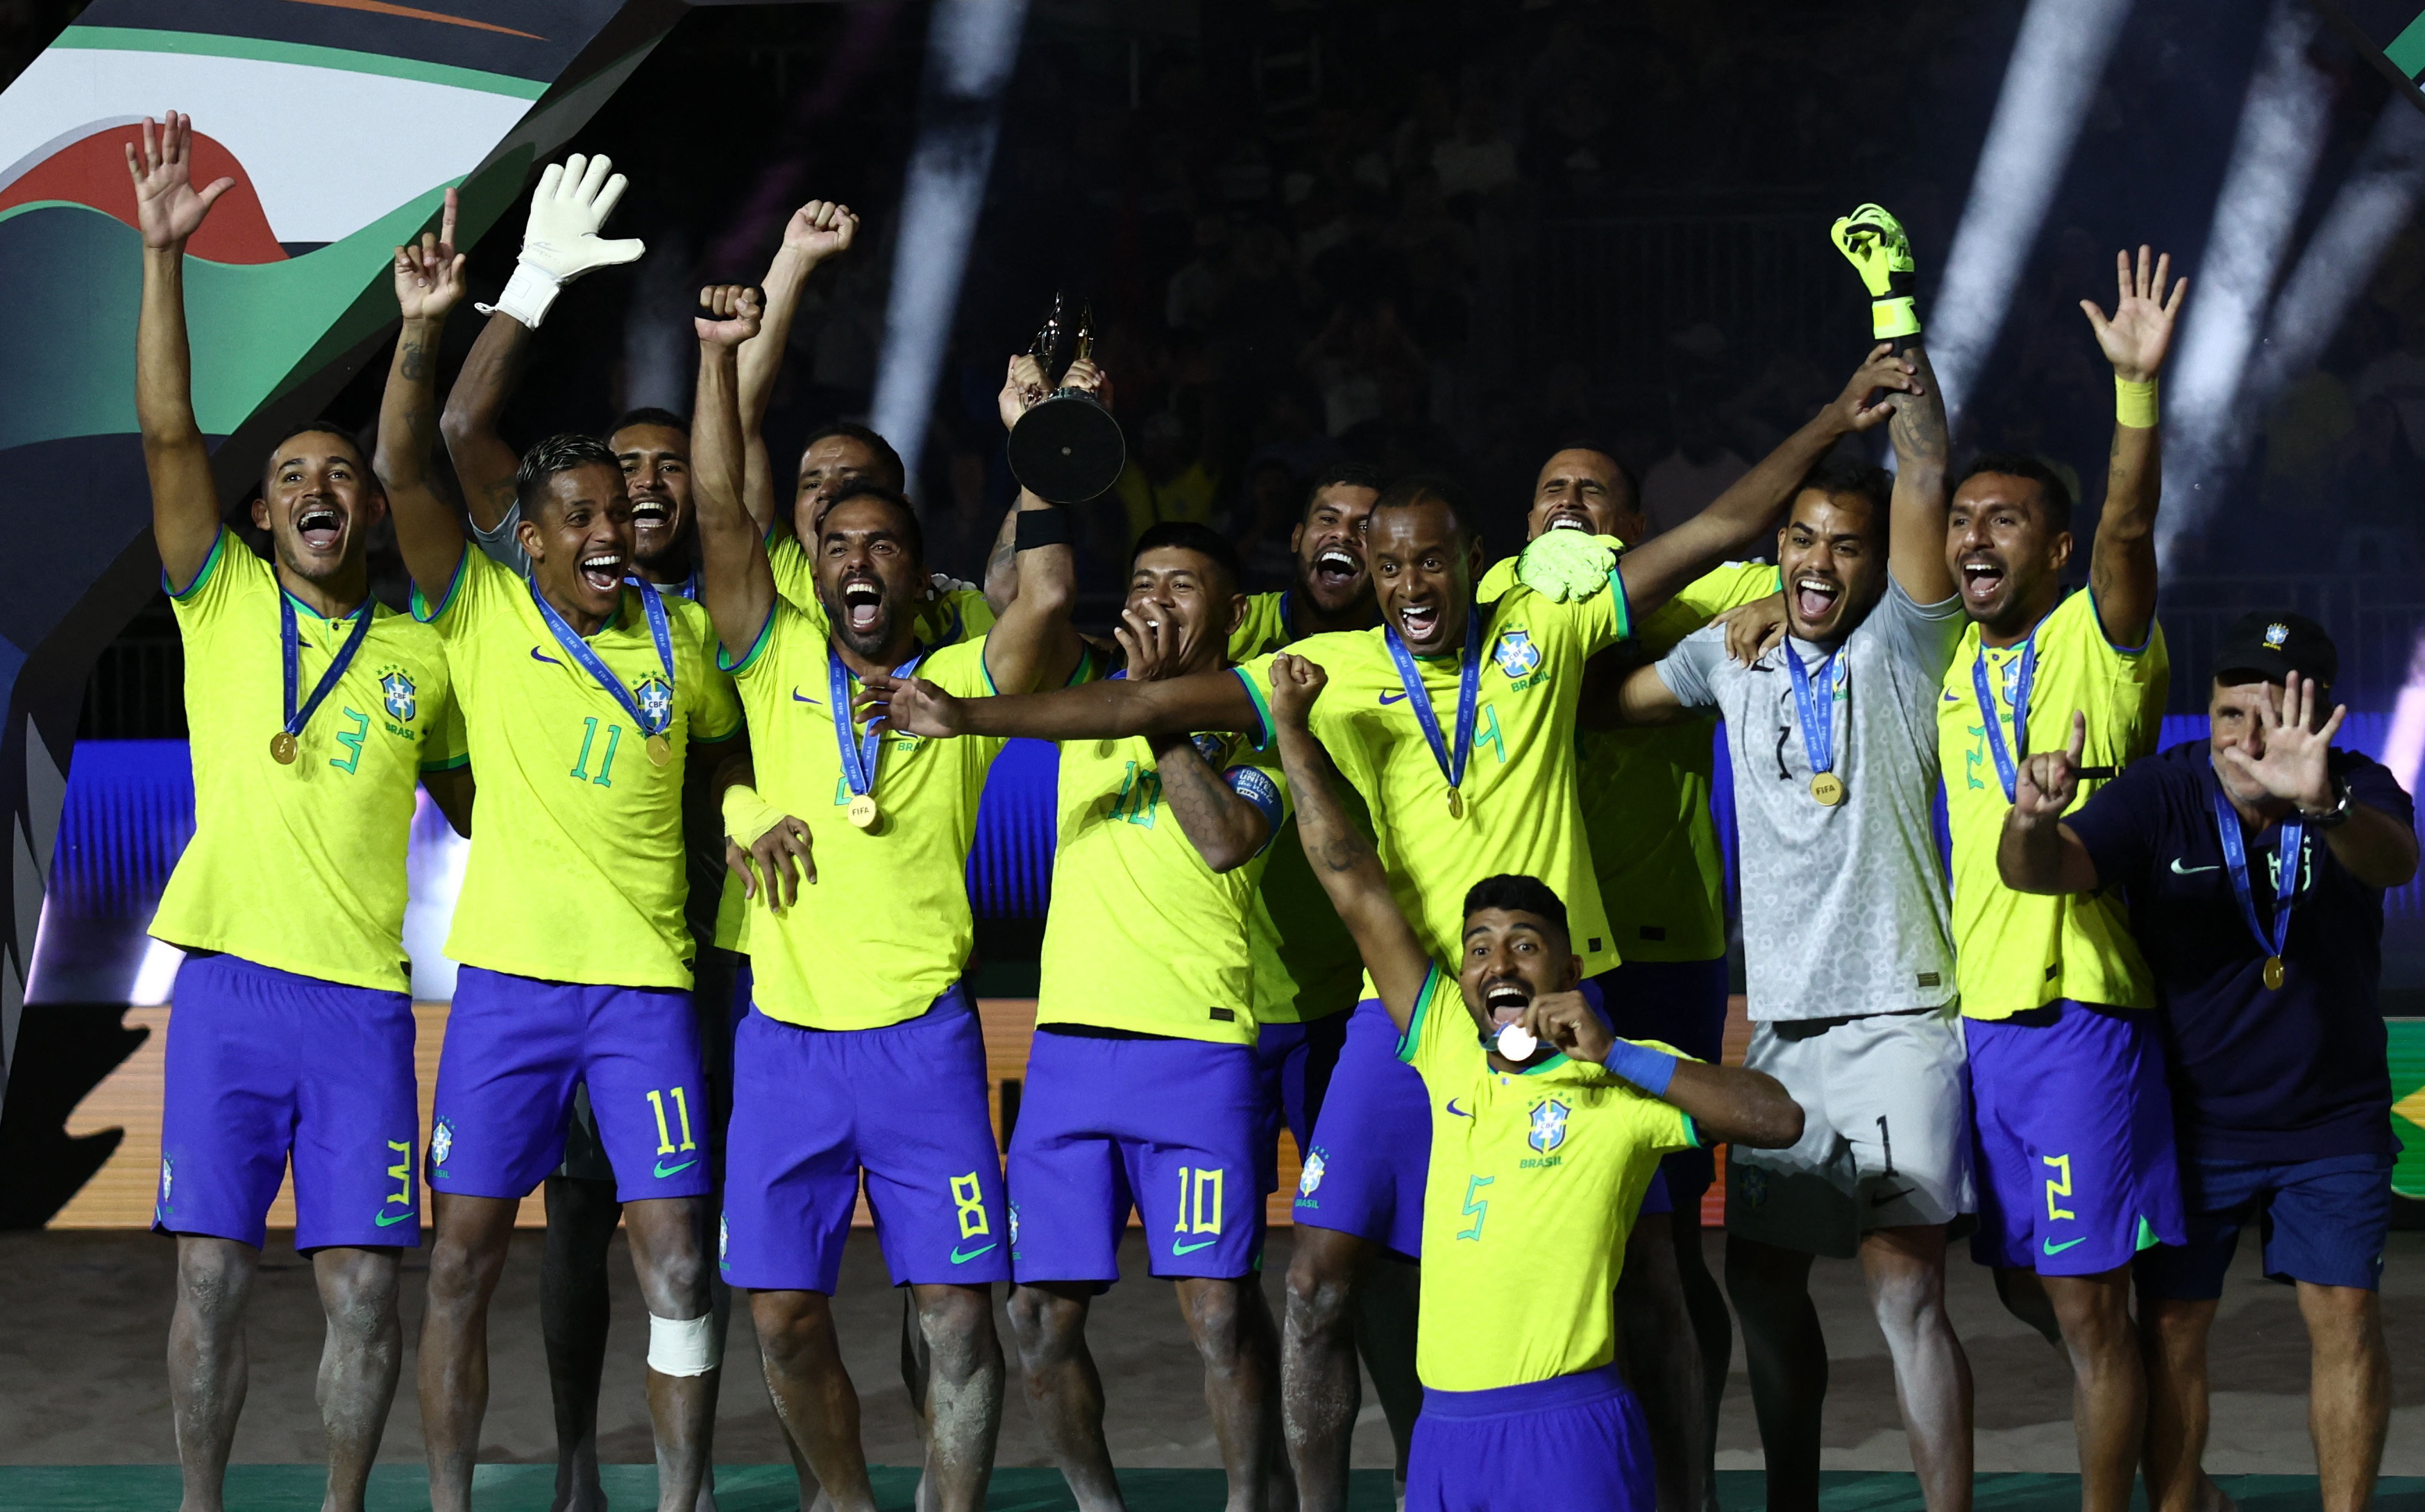 Seleção superou a Itália por 6 a 4 e tornou-se a maior vencedora da competição organizada pela Fifa